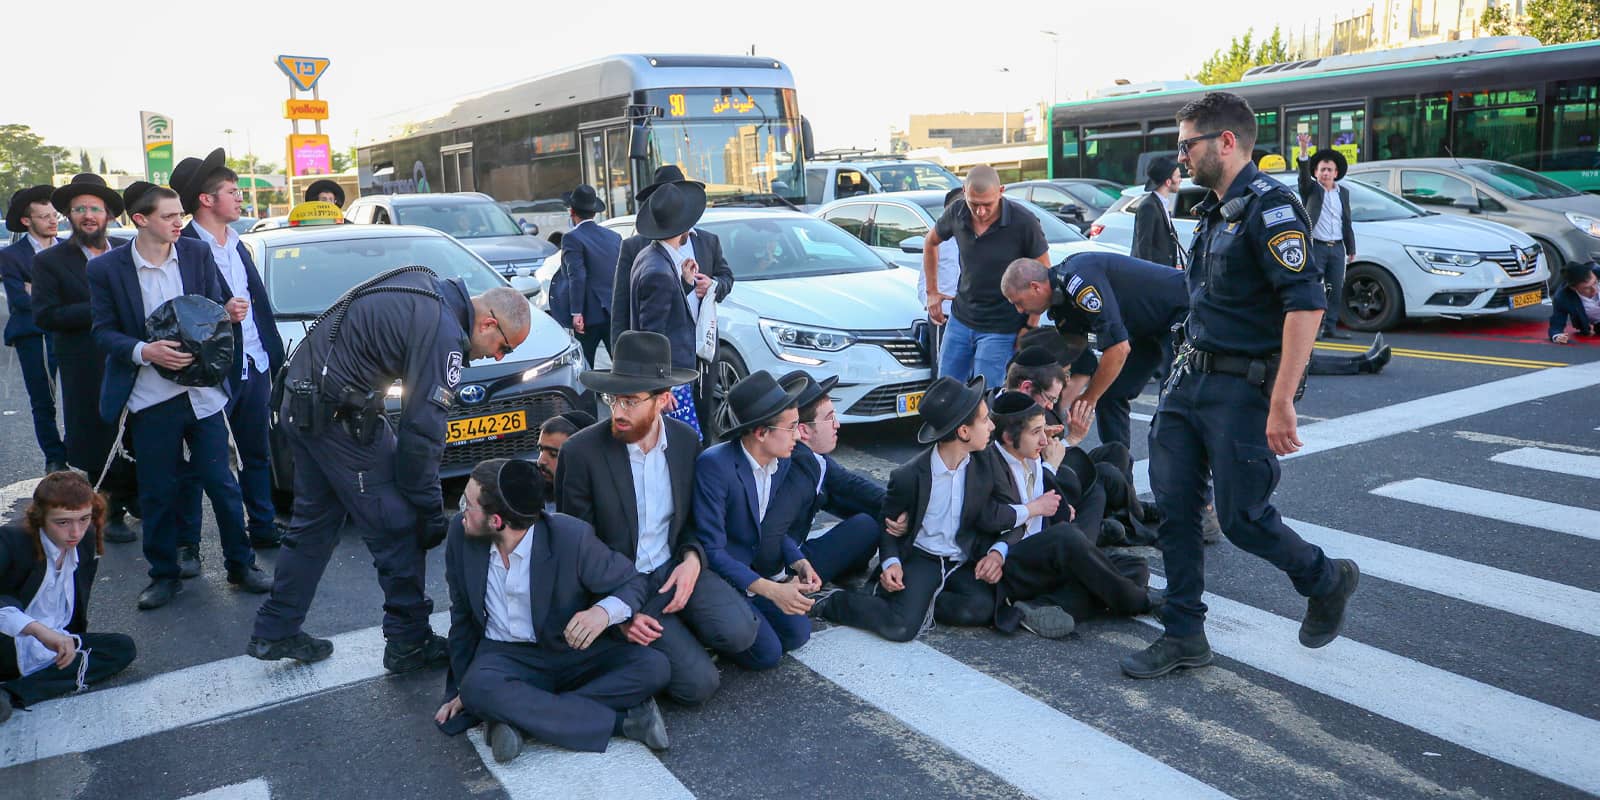 Ultra-Orthodox Jews protest